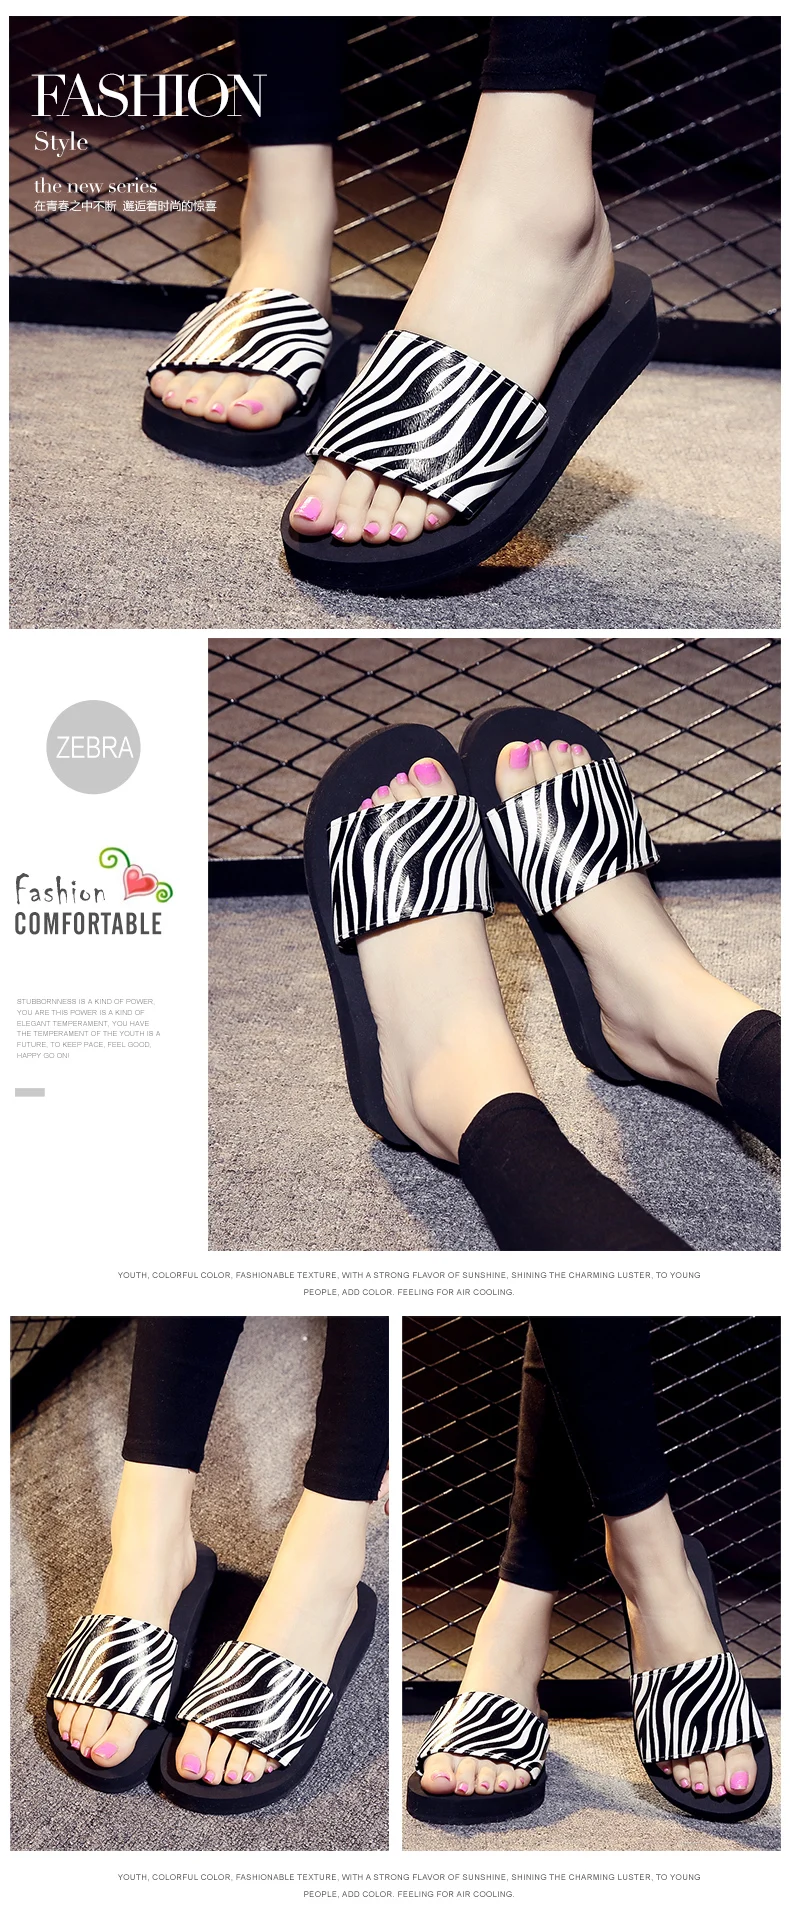 XMISTUO/летние женские шлепанцы; нескользящие сандалии с верхом из ткани; шлепанцы для улицы; пляжные сандалии на низком каблуке 3 см; шлепанцы; 5 цветов; 7046